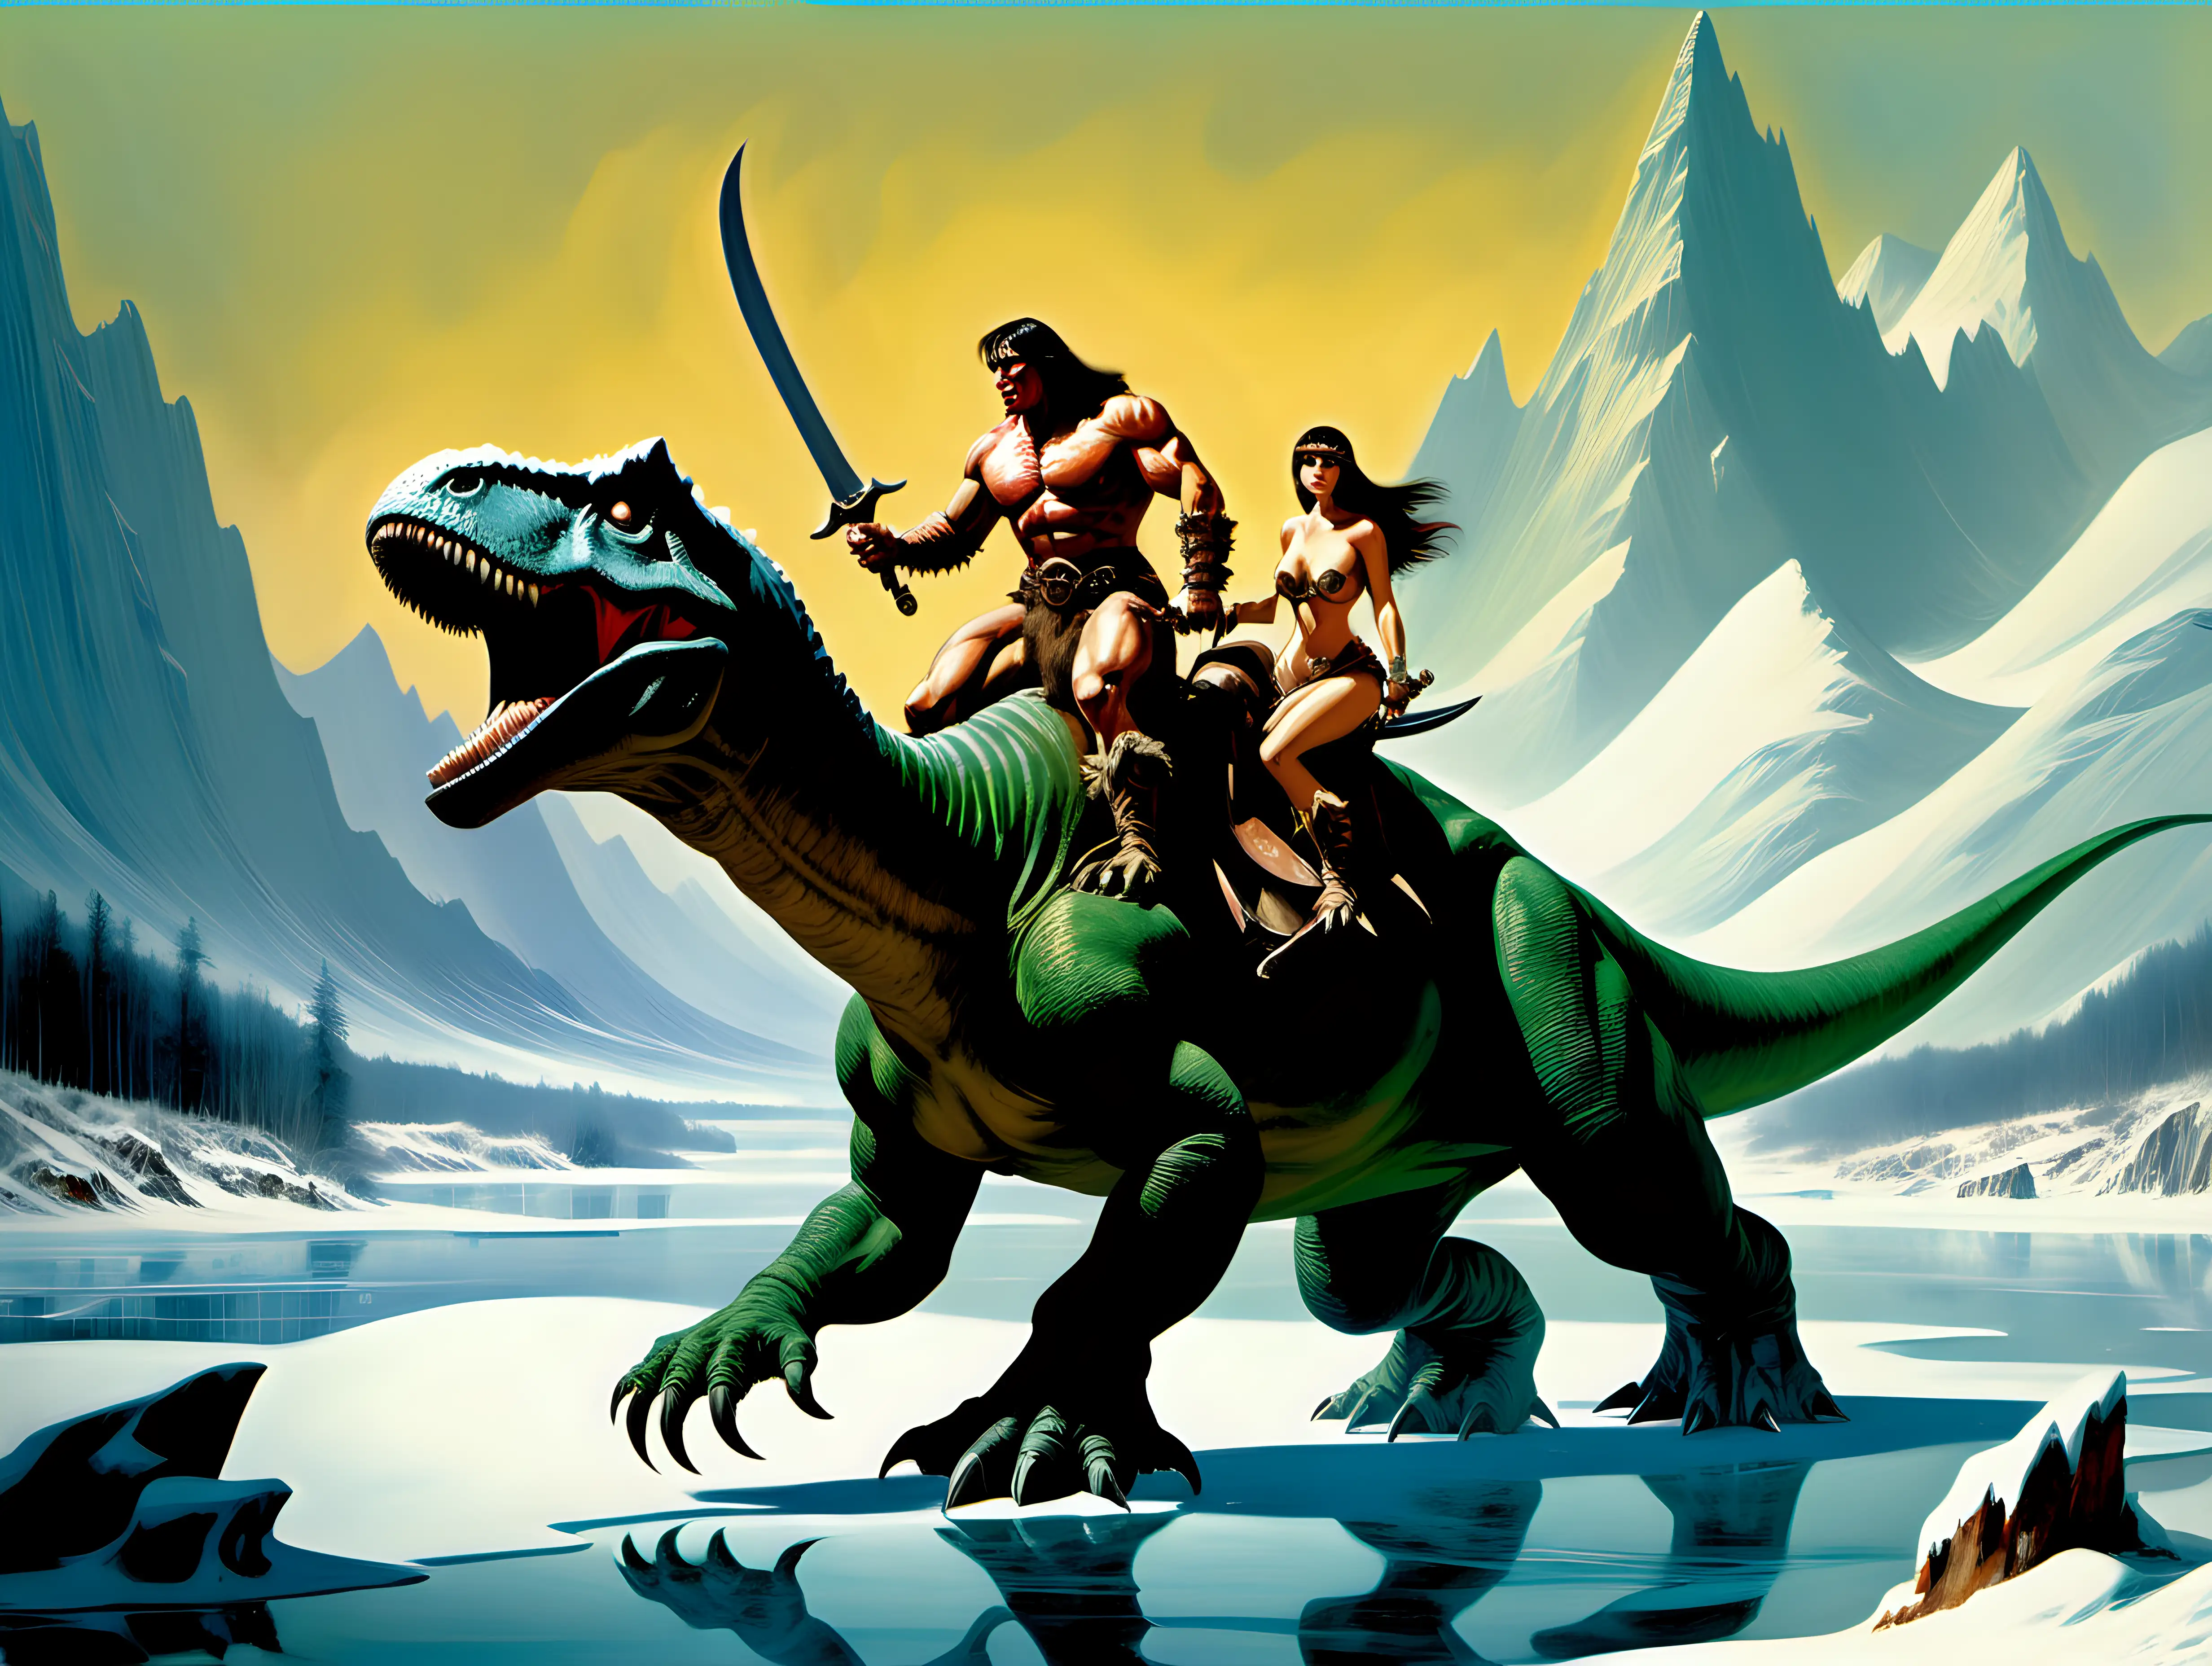 Barbarian Warrior Mounted on Dinosaur in Frozen Mountainous Terrain